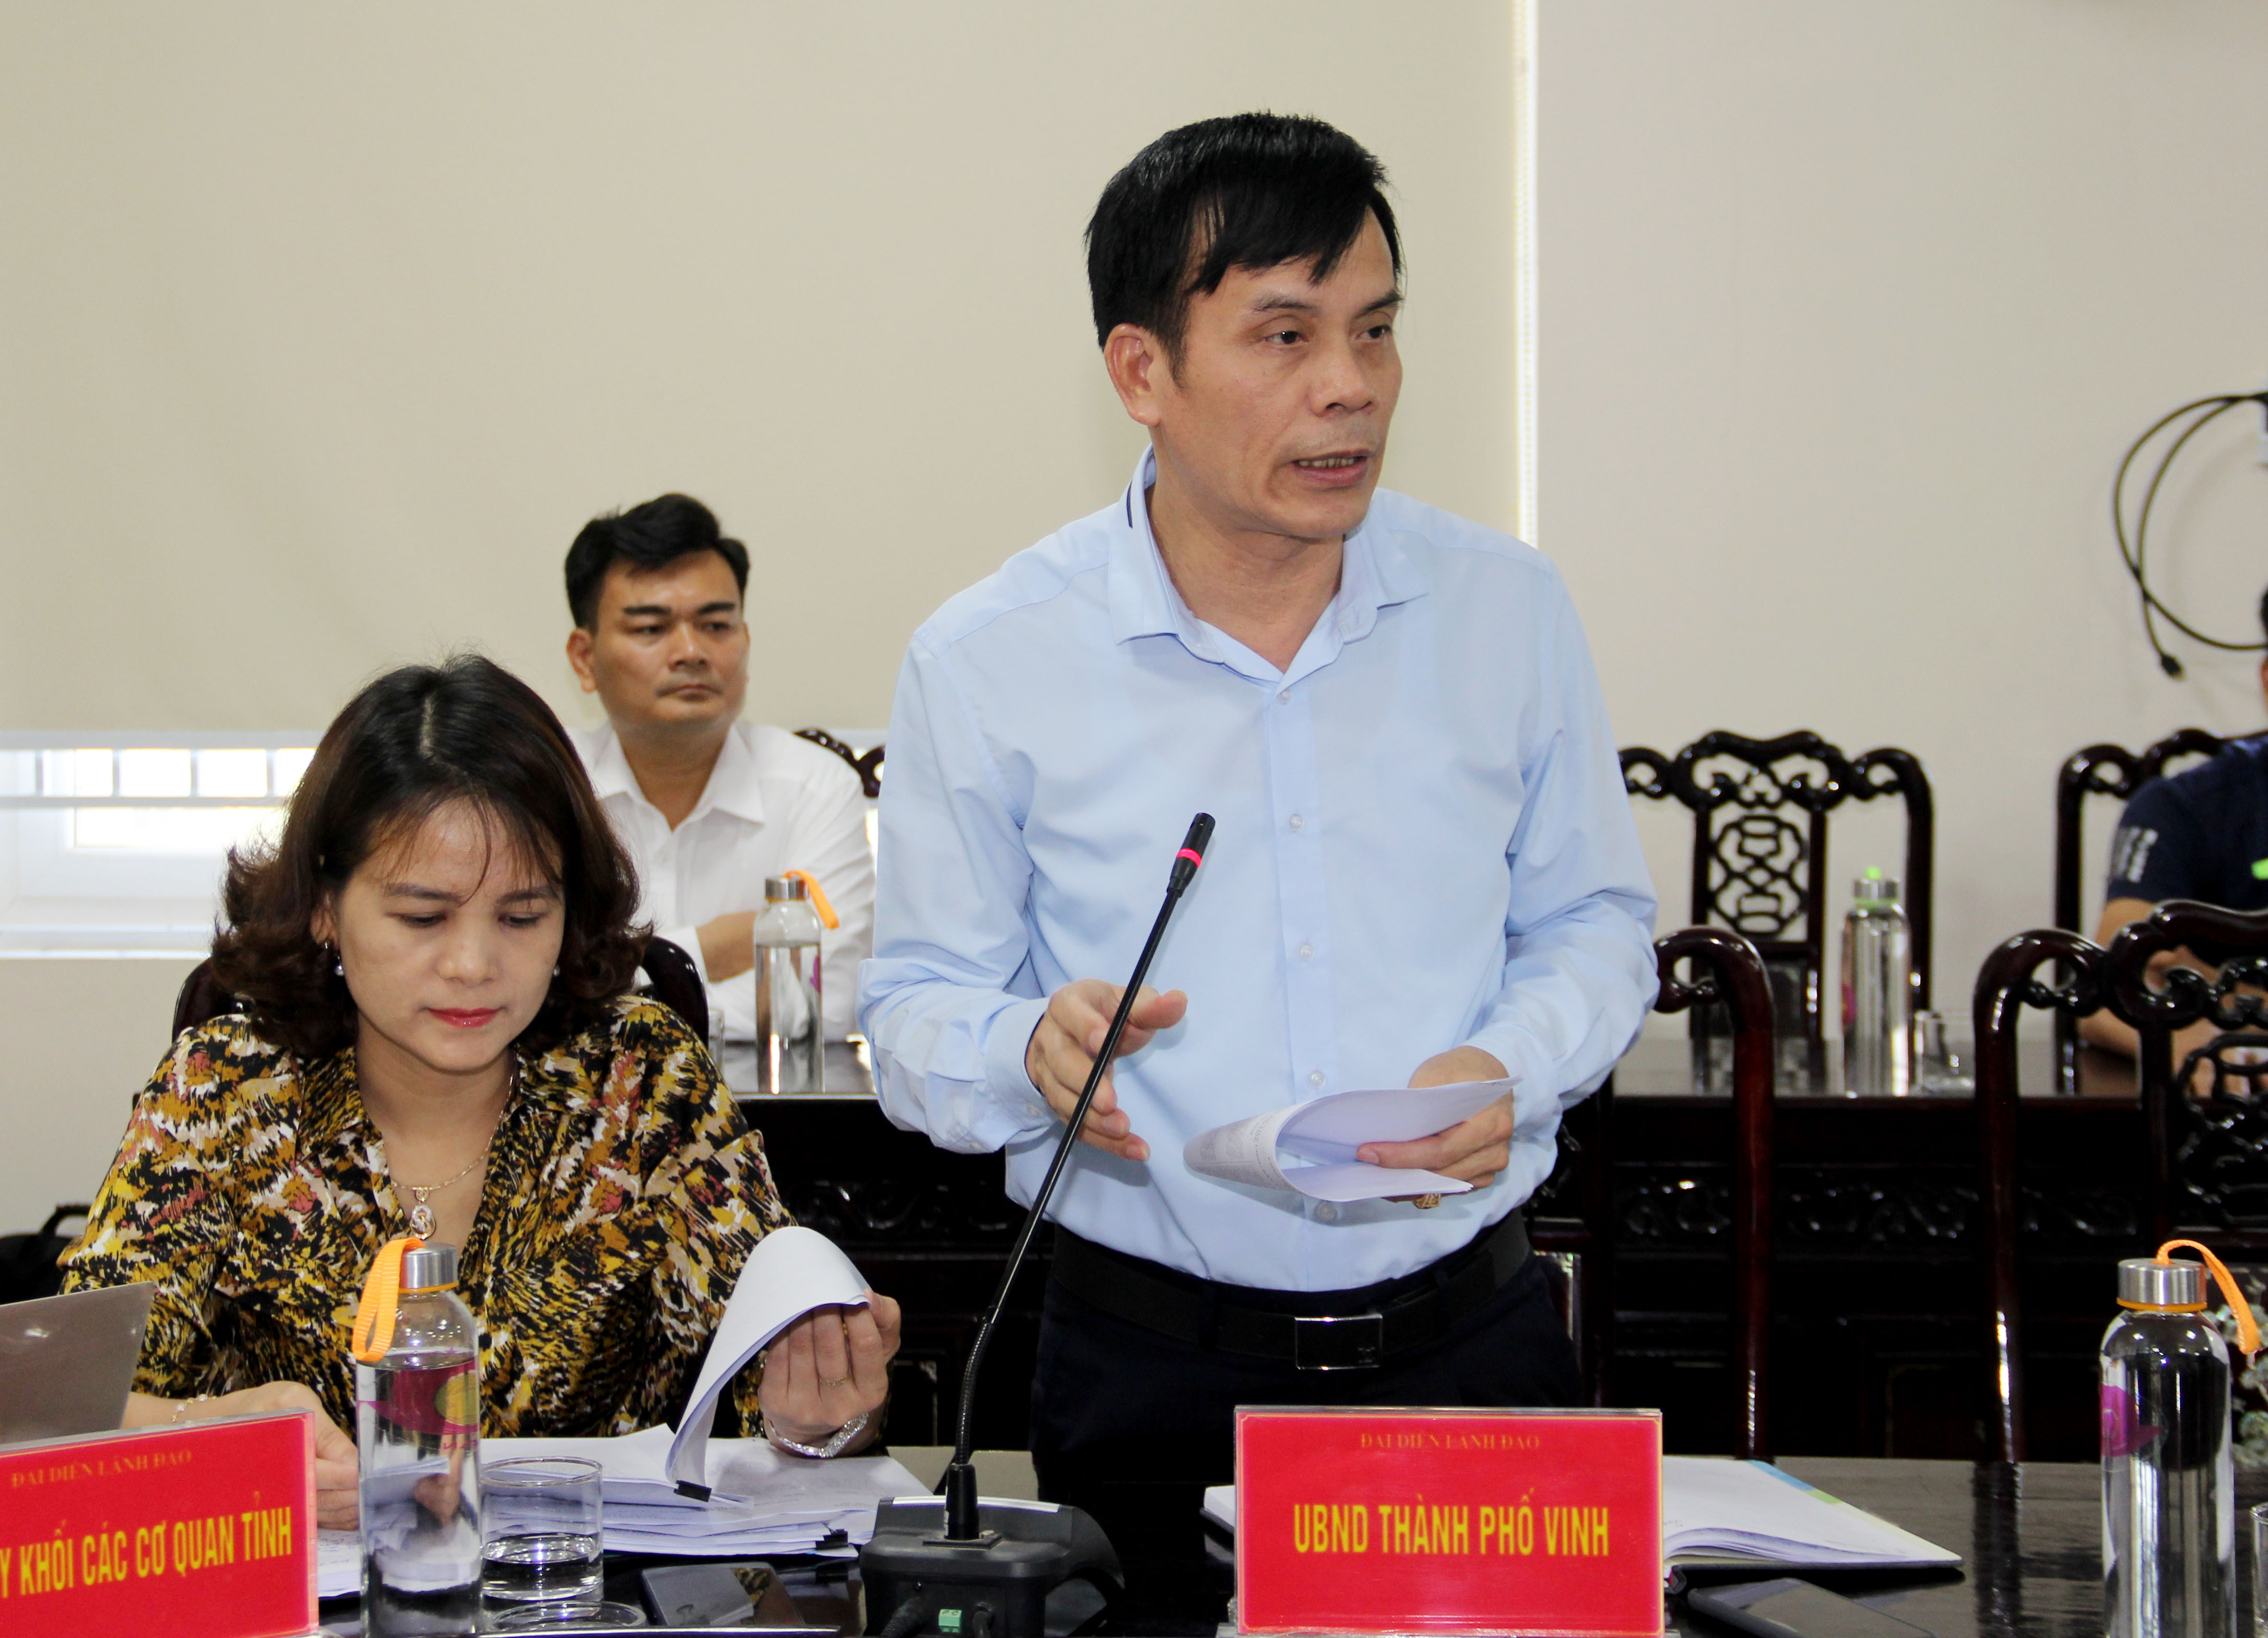 Ông Trần Ngọc Tú - Chủ tịch UBND TP Vinh báo cáo kết quả và đề xuất hướng giải quyết các nội dung công dân kiến nghị. Ảnh: Phạm Bằng